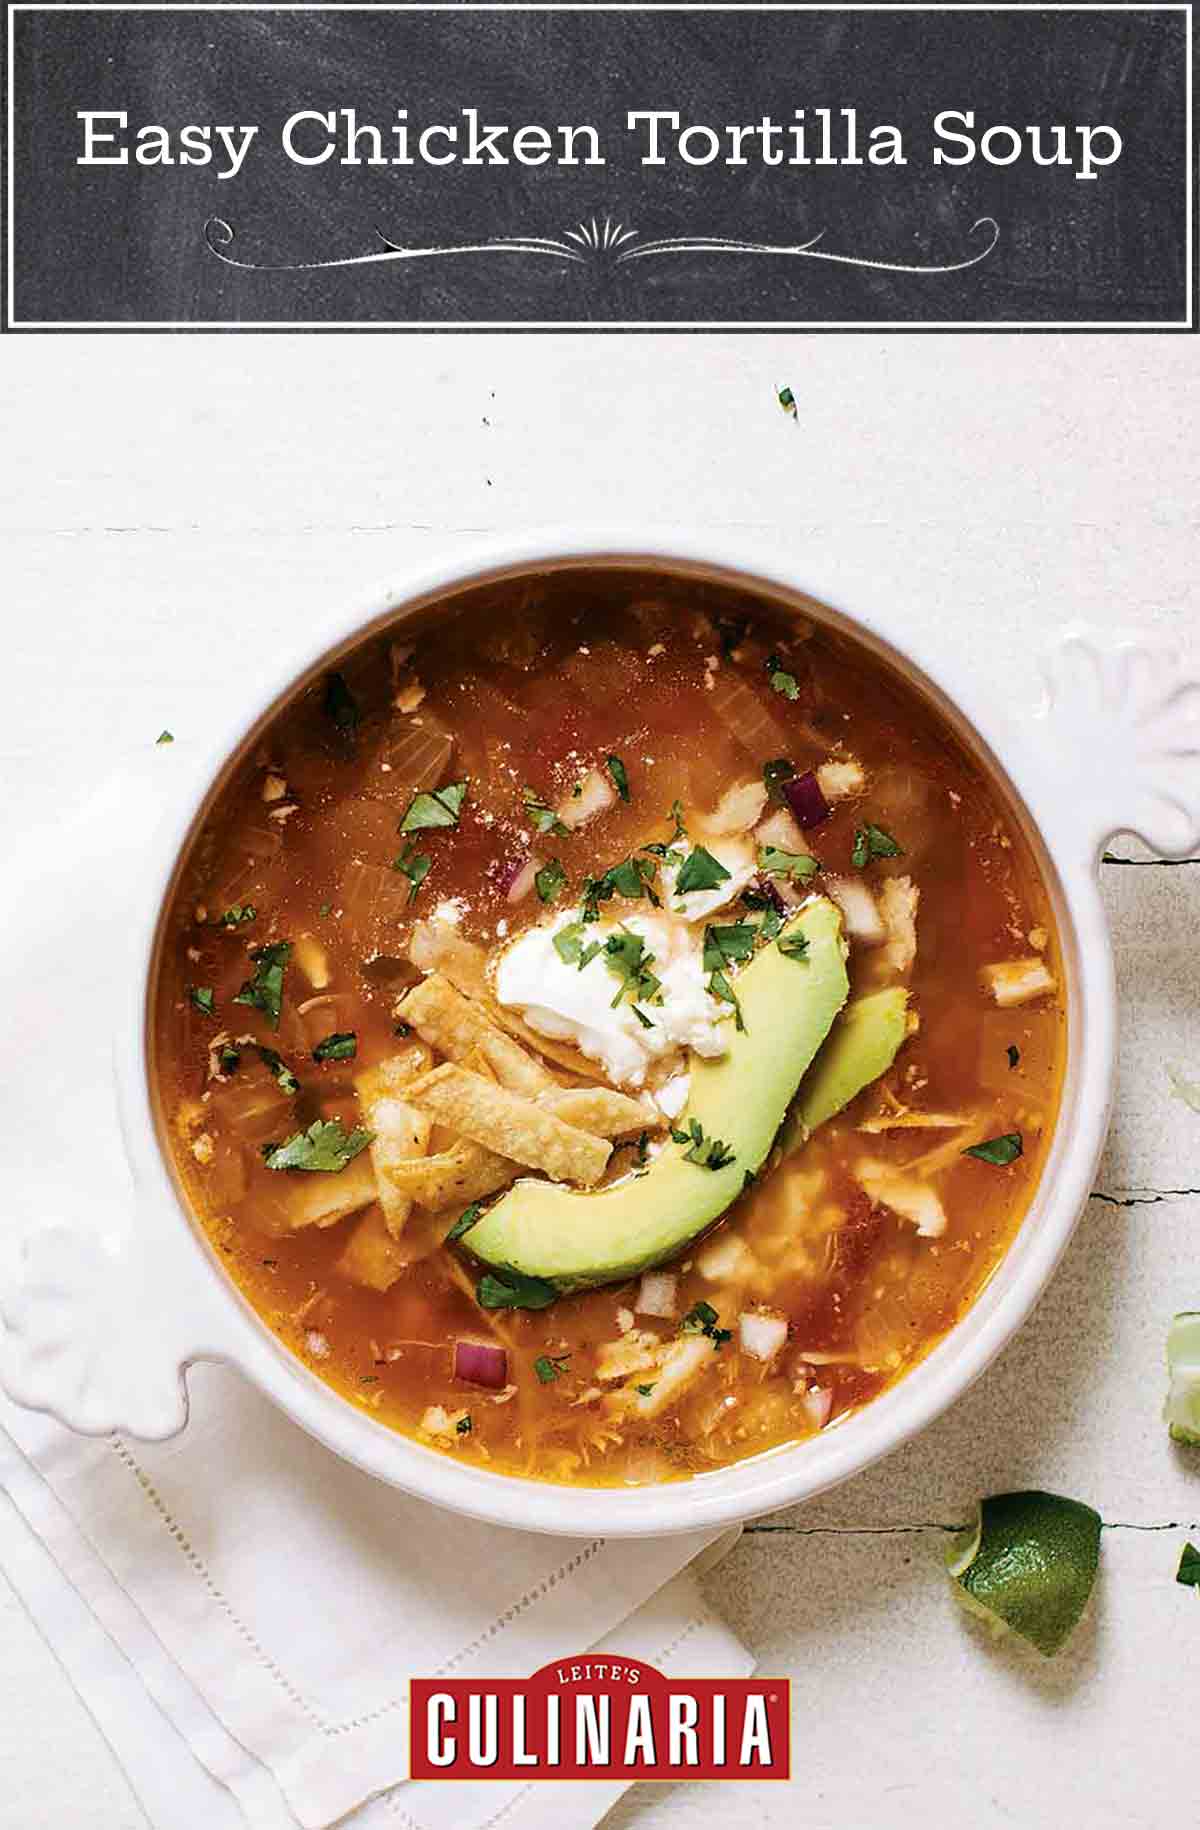 A bowl of easy chicken tortilla soup, with chicken, avocado, tortilla strips, and sour cream.